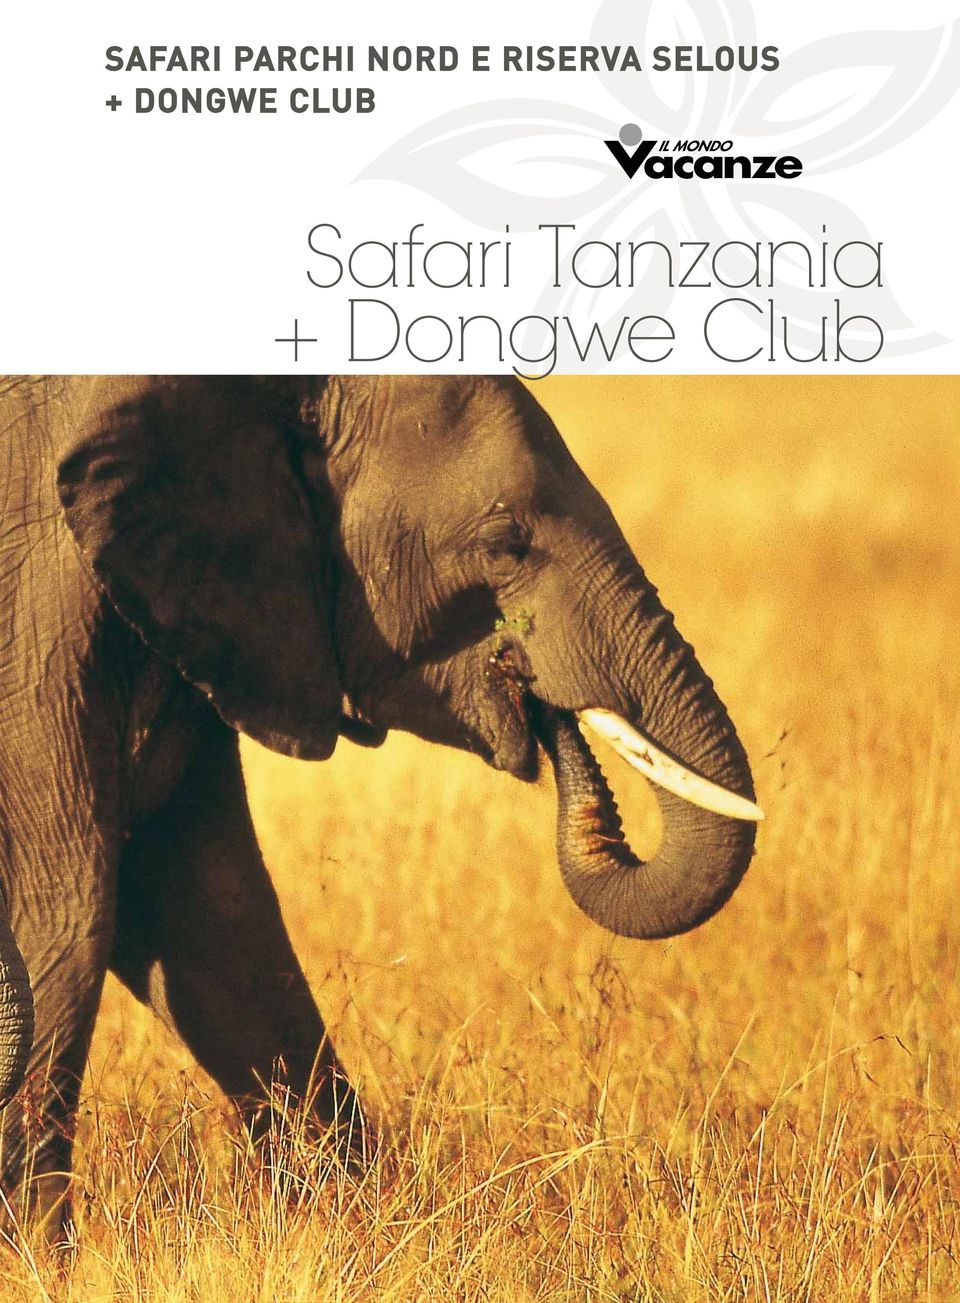 DONGWE CLUB Safari